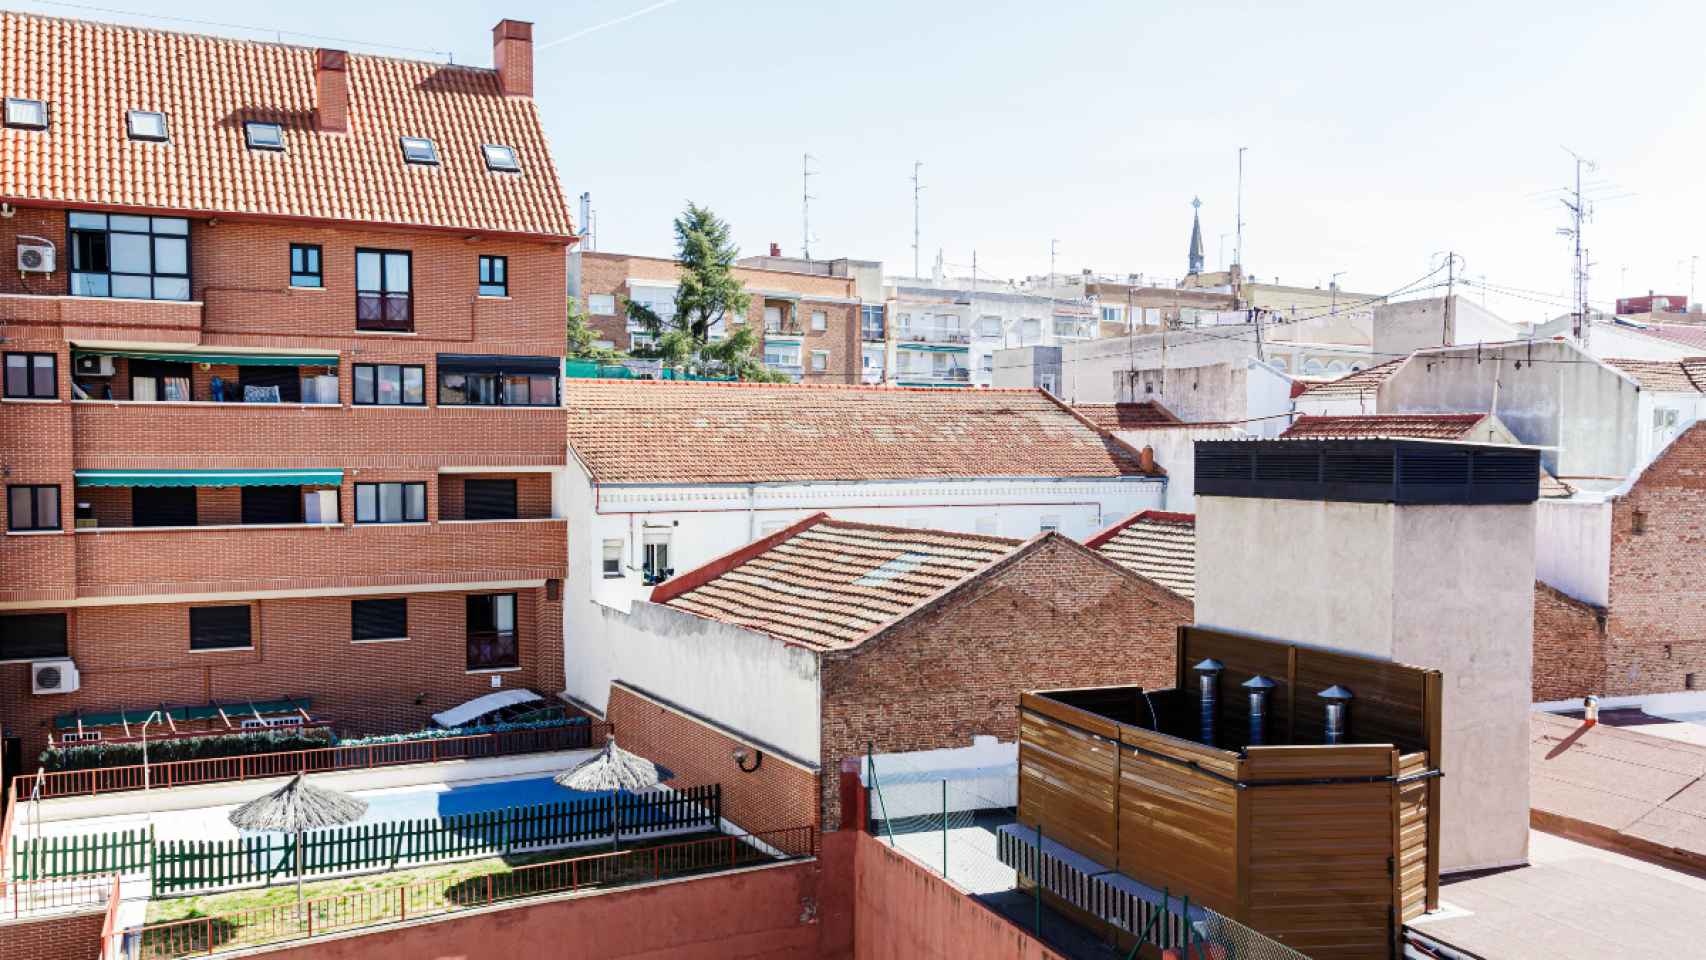 Conductos de aire y chimeneas de una cocina fantasma, en Tetuán (Madrid).